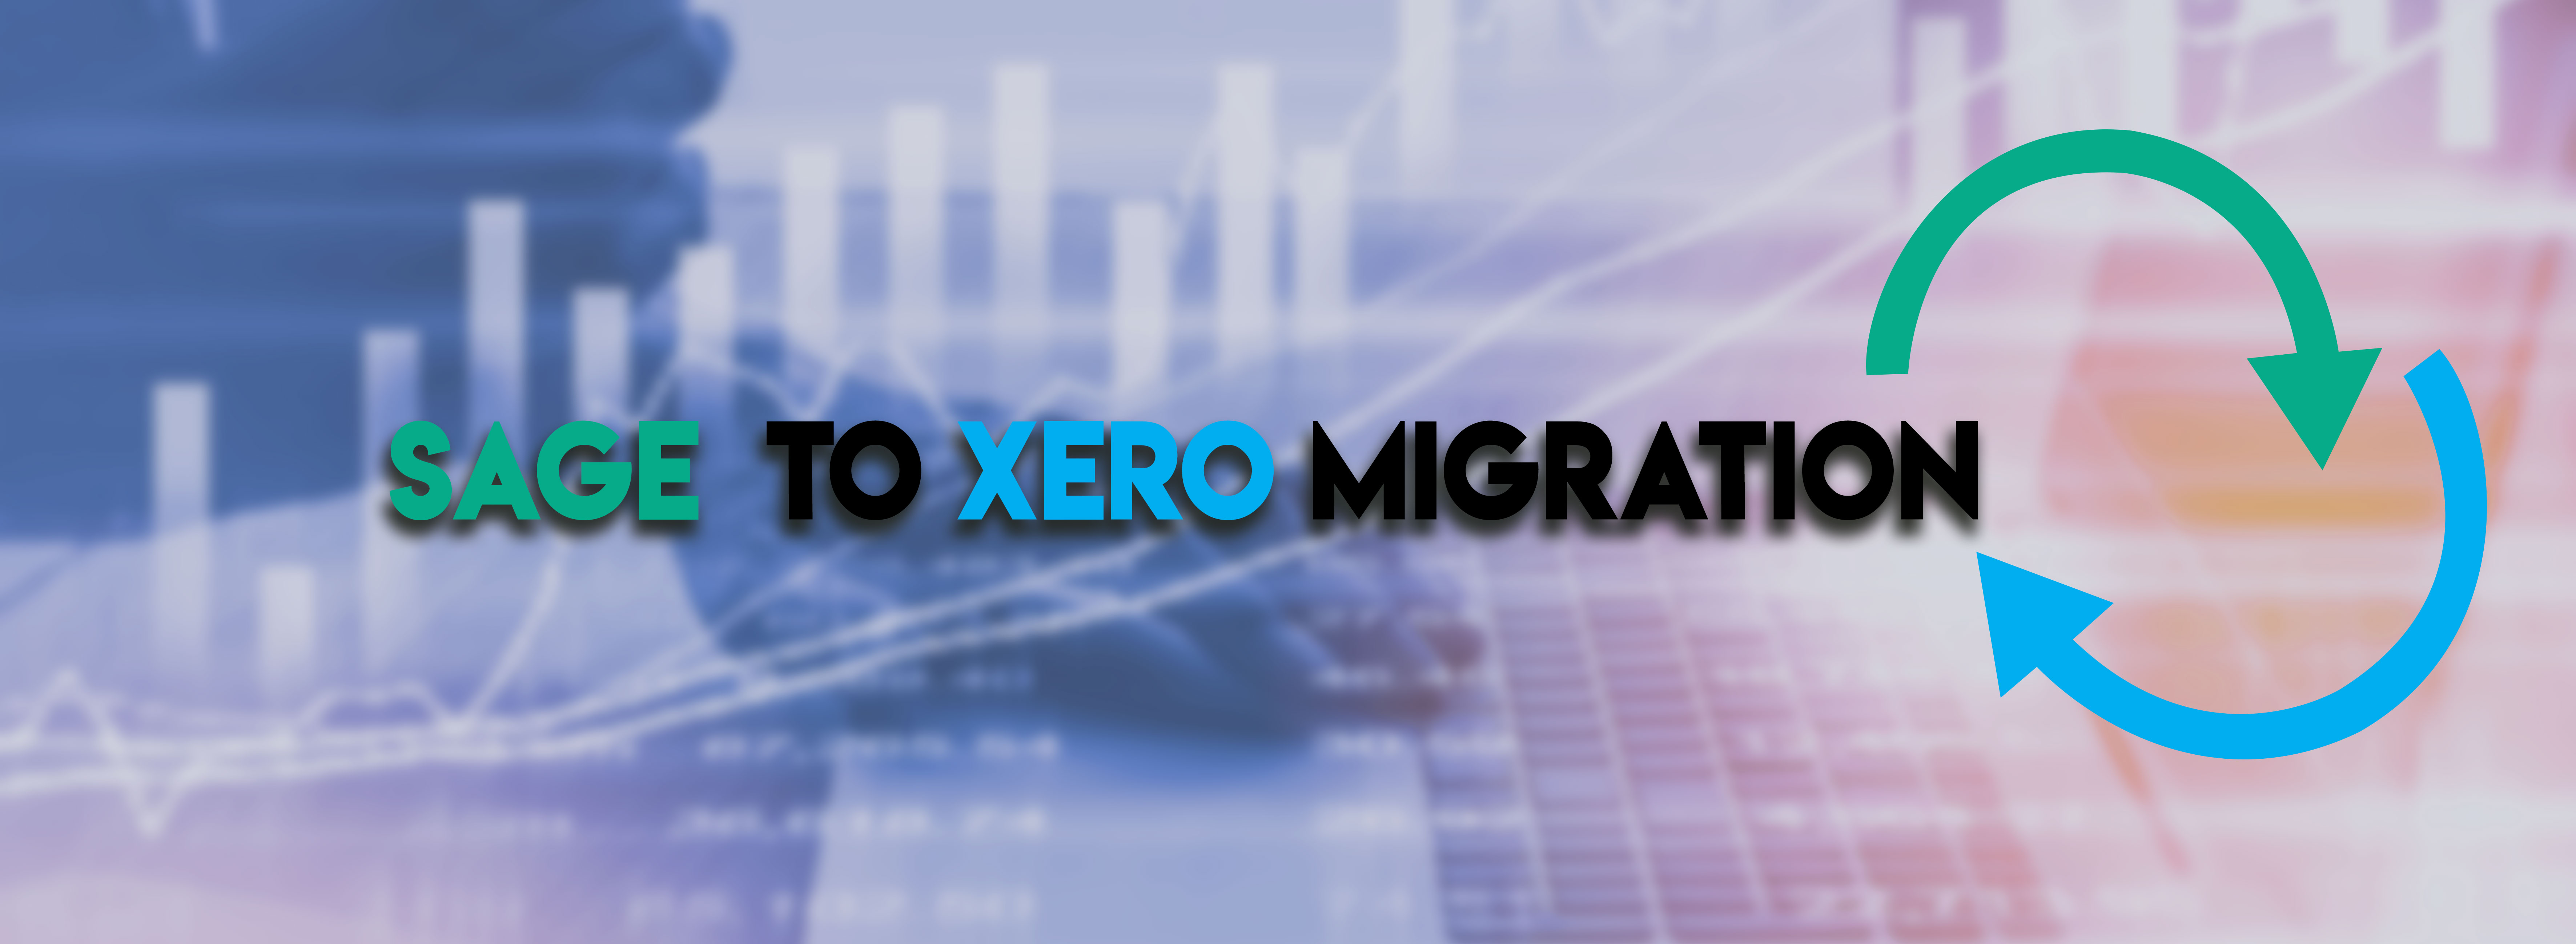 SAGE to XERO Migration